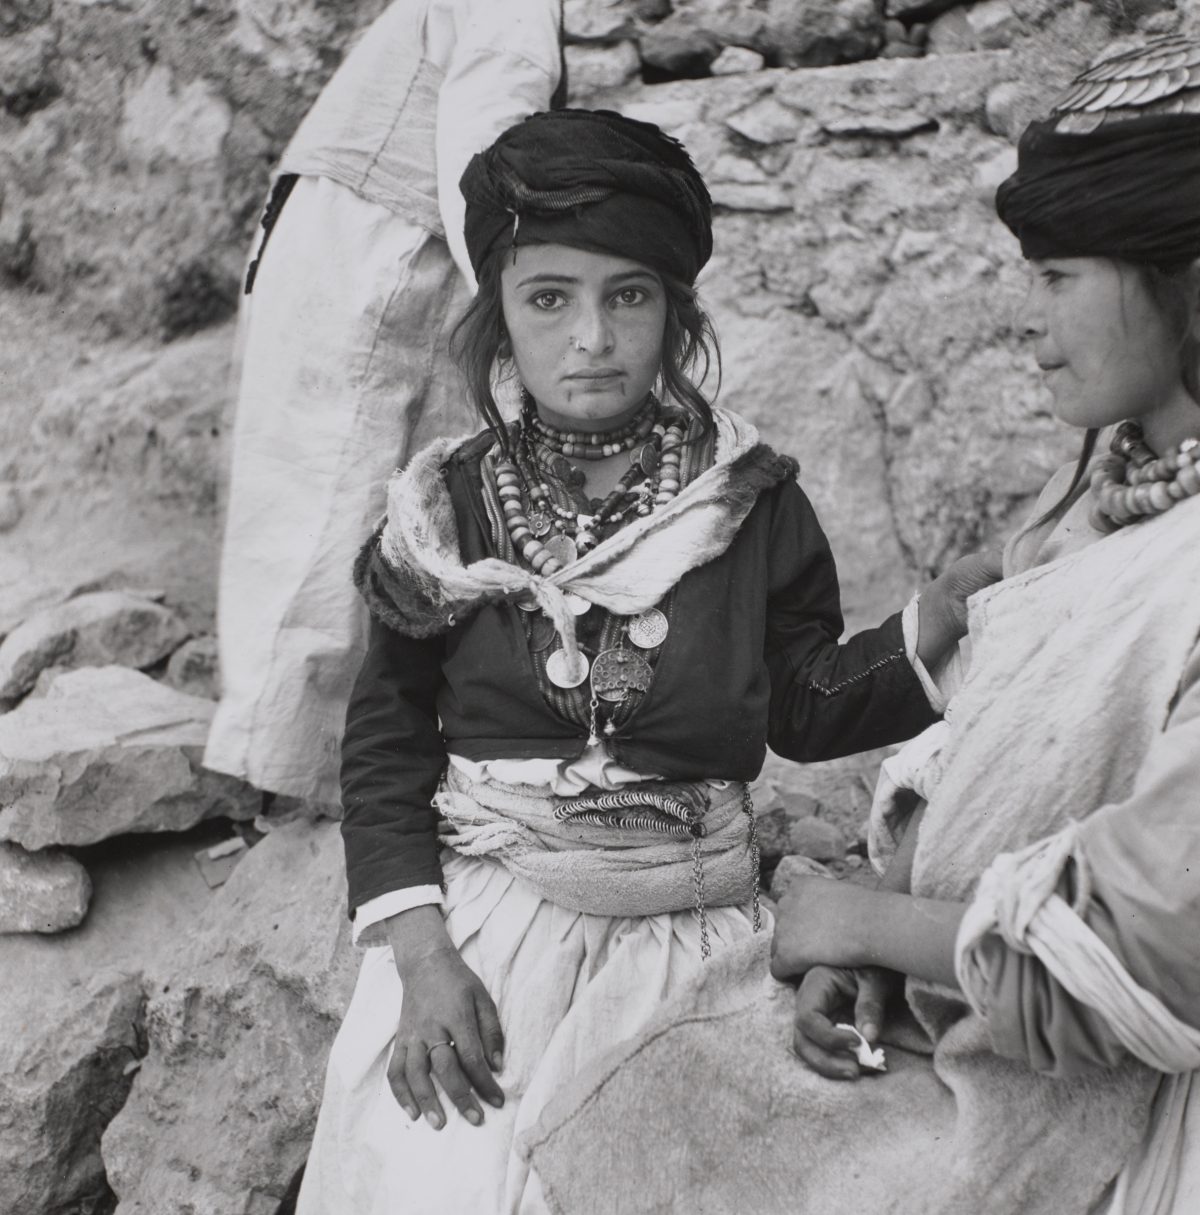 Kurdistan in the 1940s - The Courtauld